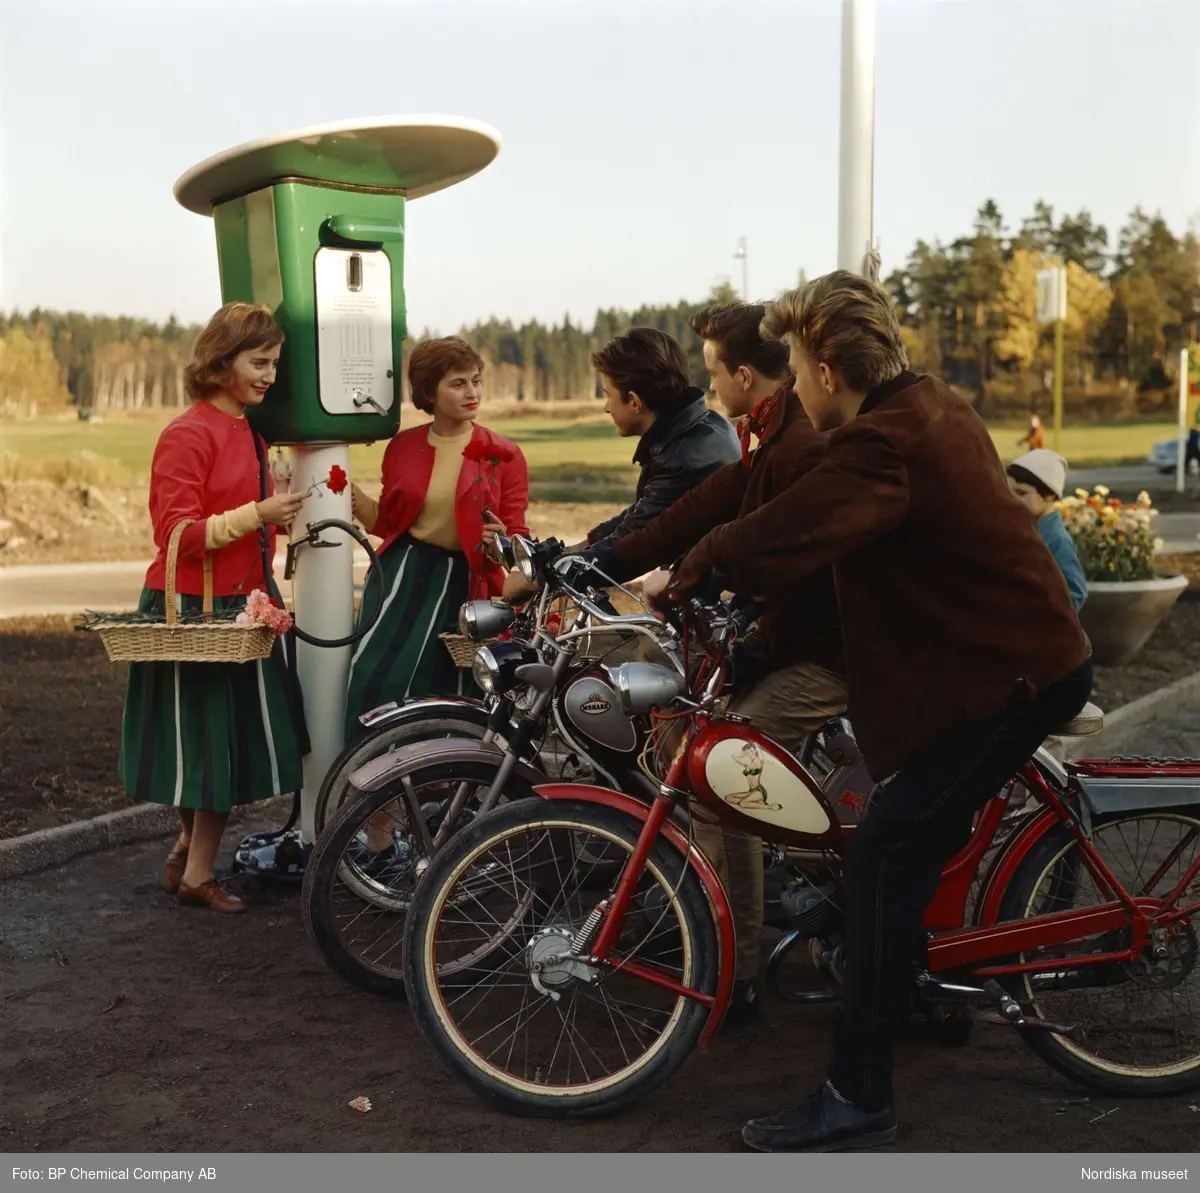 BP-mack. Tre ynglingar på mopeder och två "blomsterflickor" vid bensinstation.